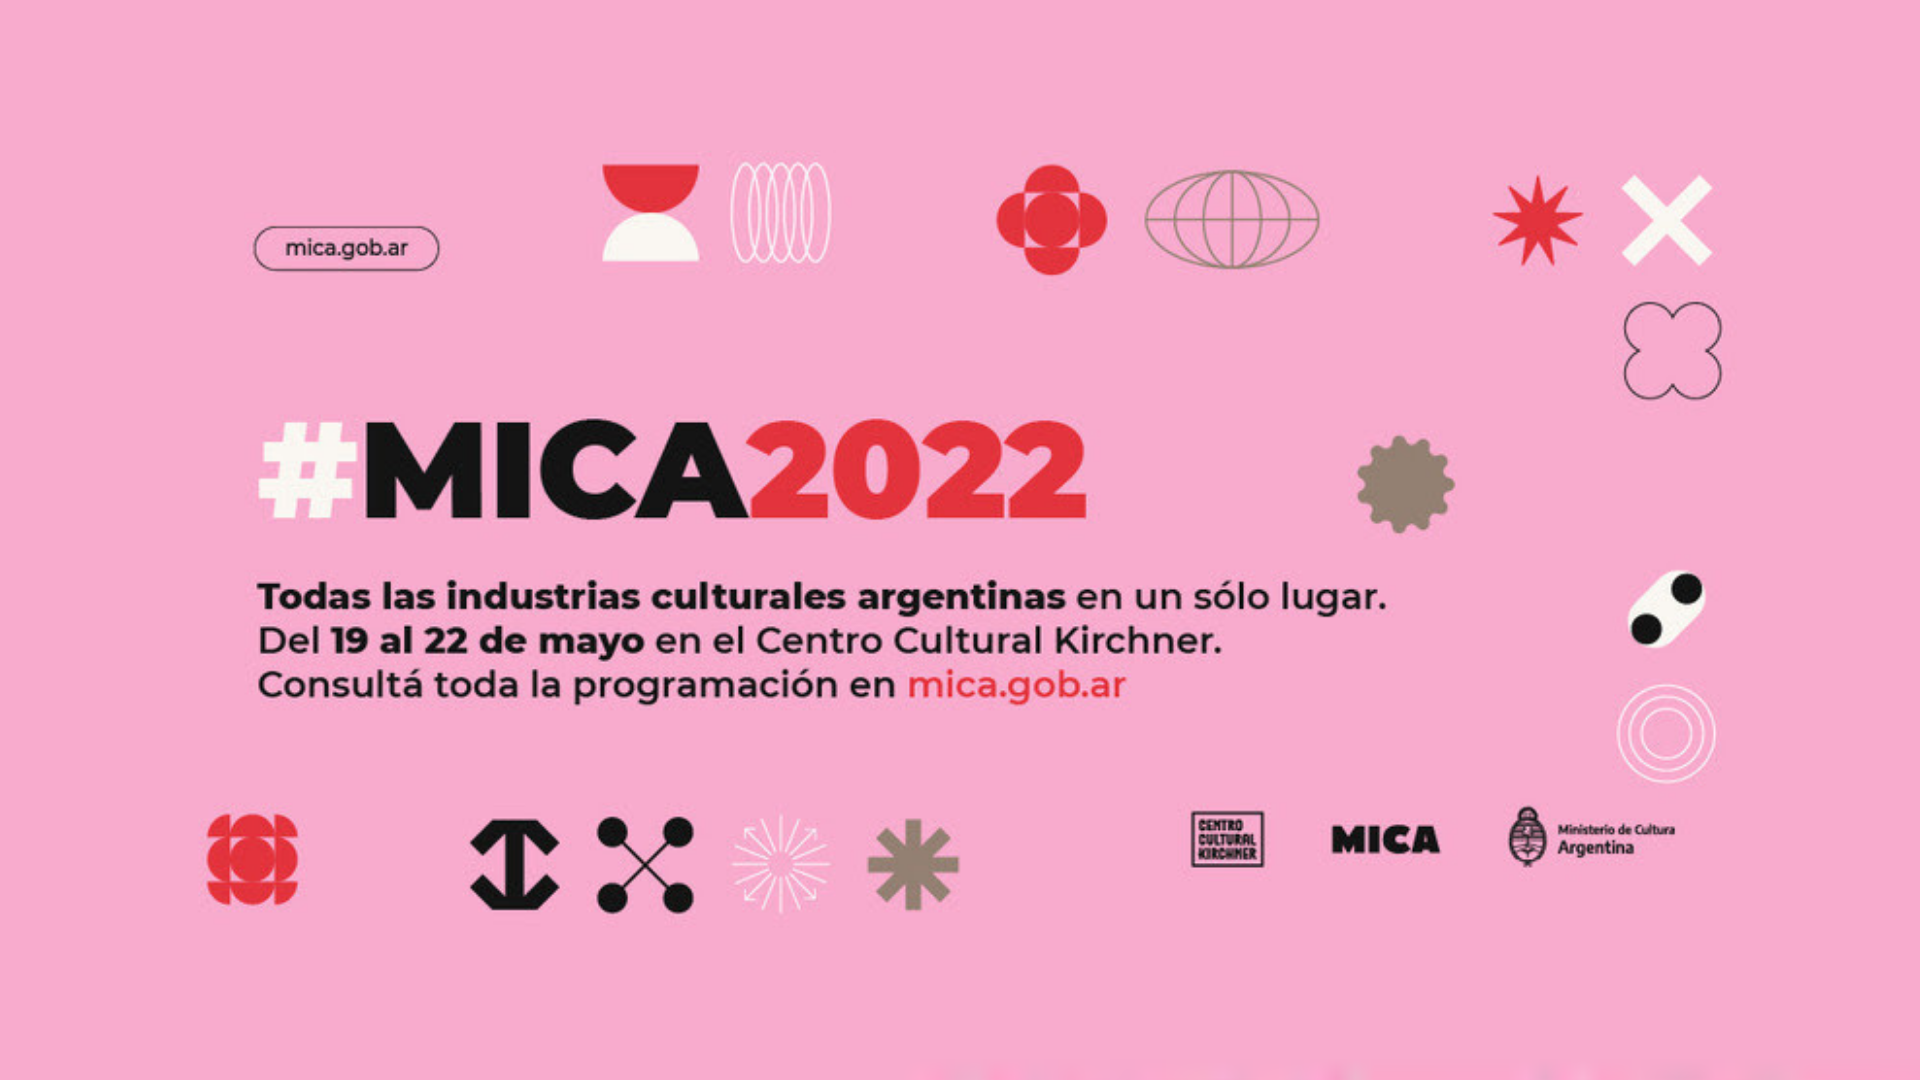 MICA 2022